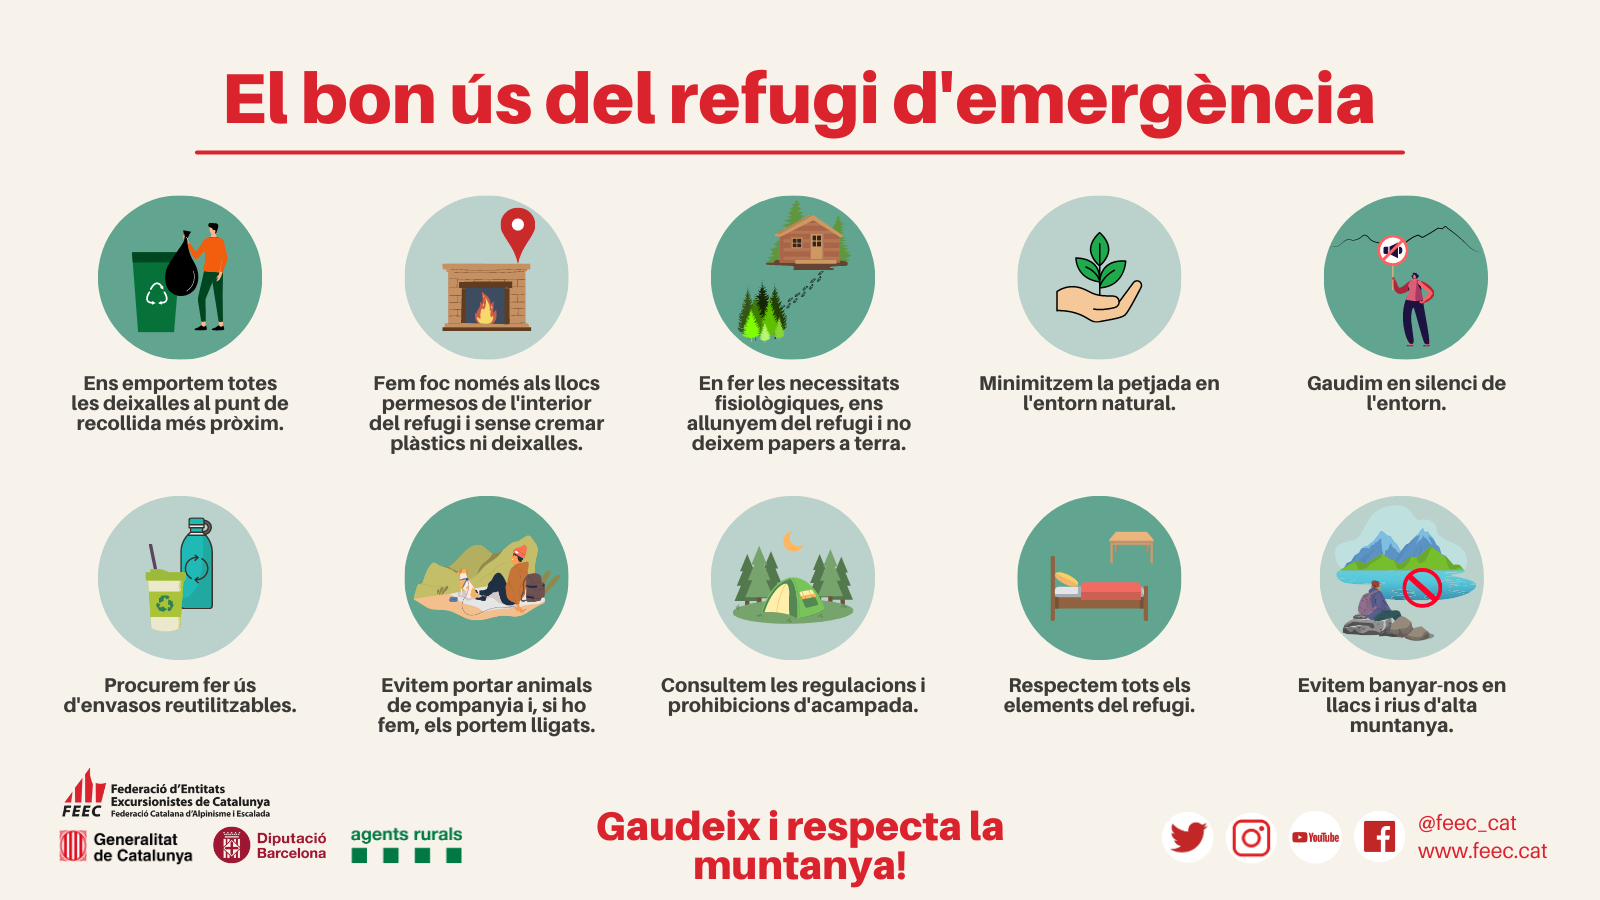 infografia amb consells per respectar el medi ambient en l'ús dels refugis d'emergència